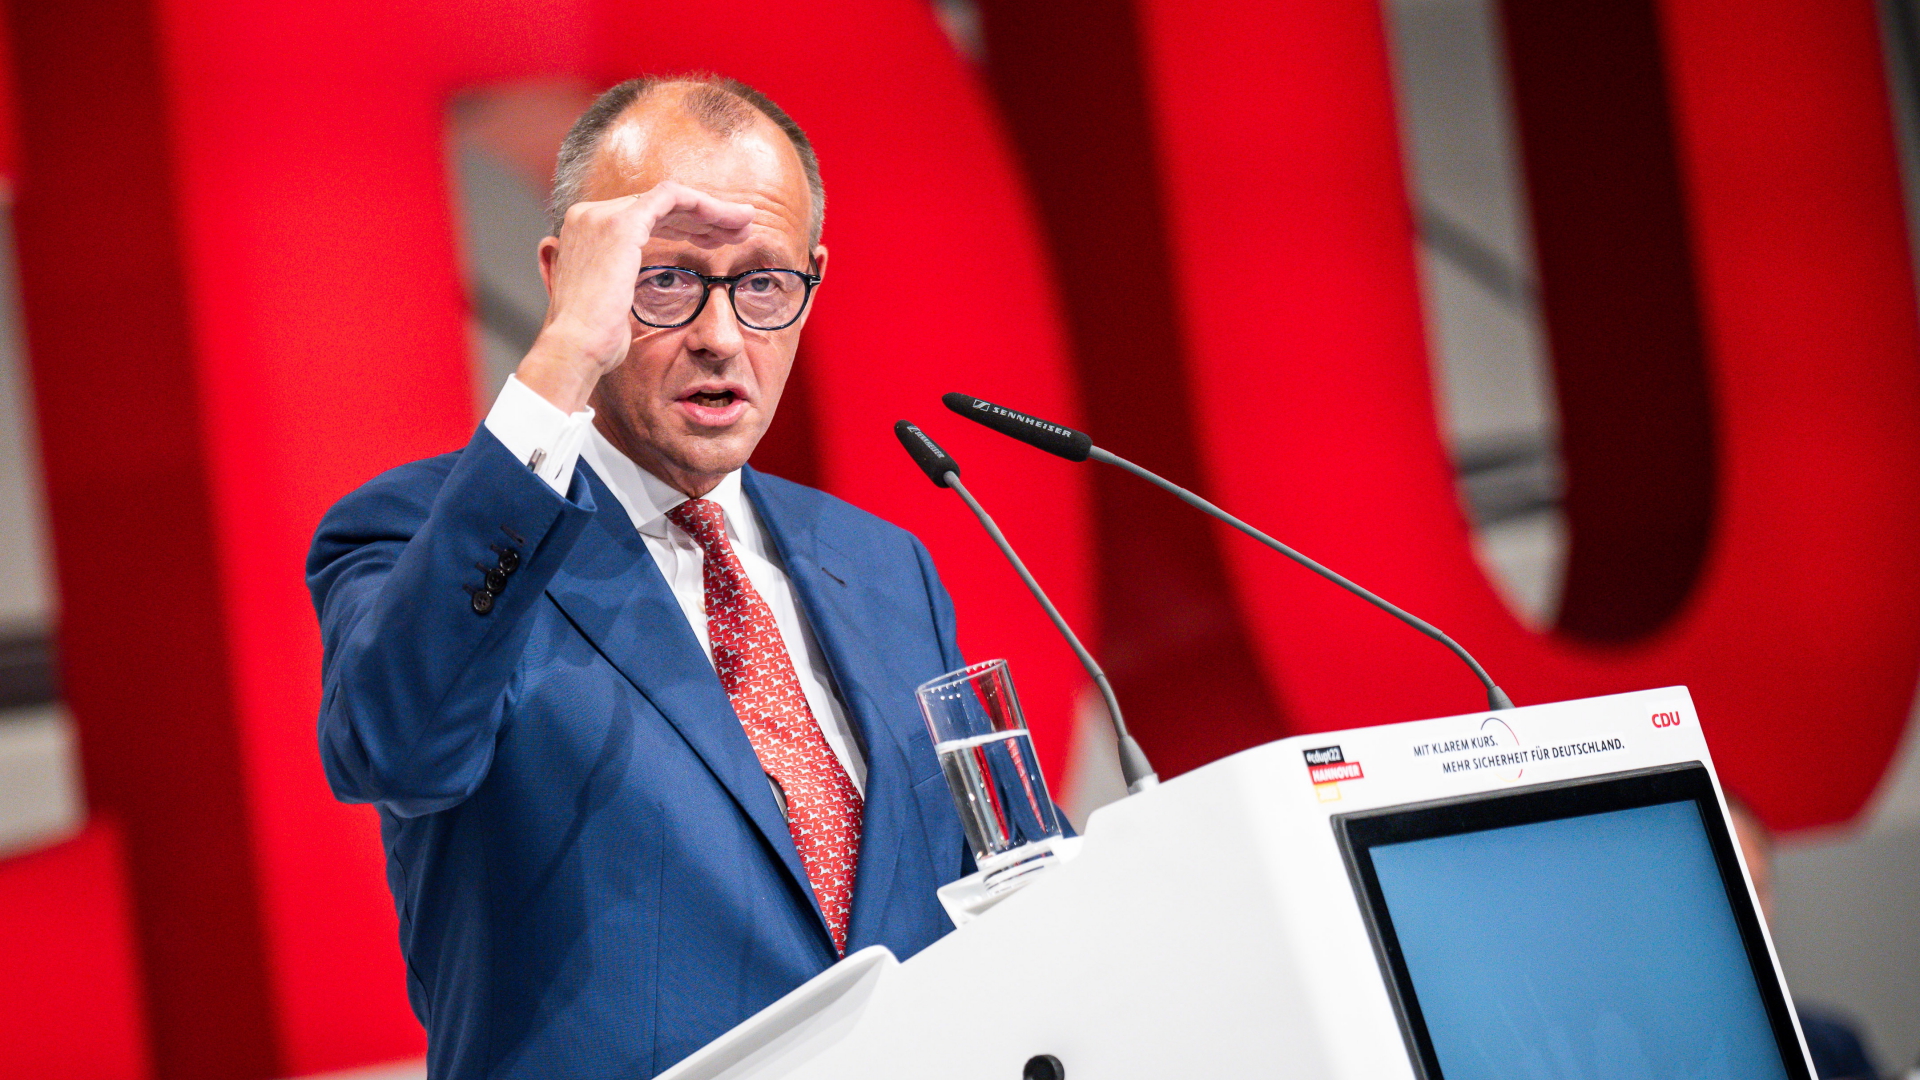 Erneuerung der Partei: Warum die CDU noch auf der Suche ist